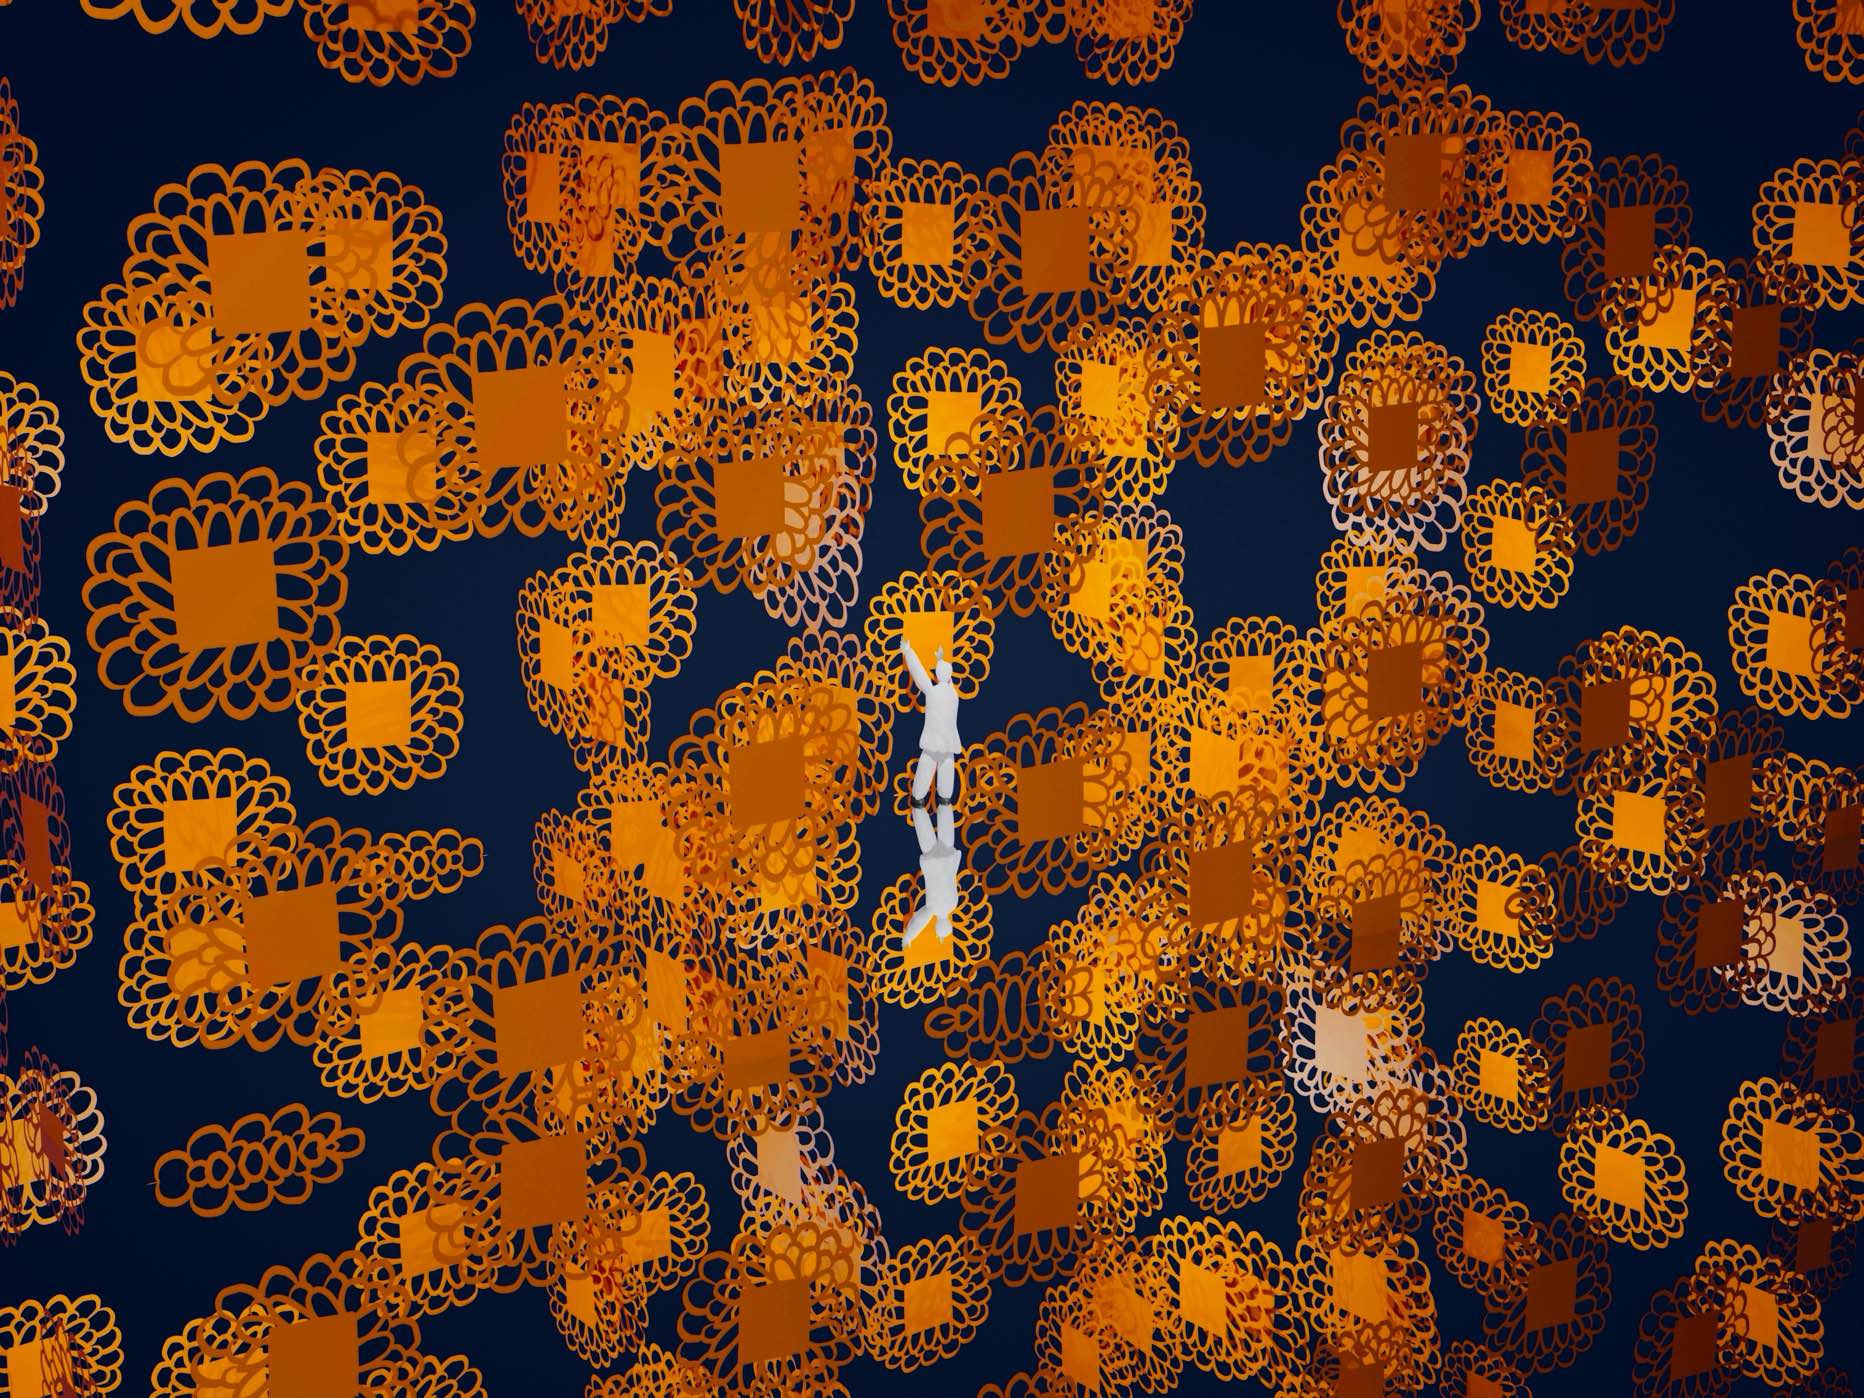 Atsushigraphのグラフィックアート「Flower Pixel」。